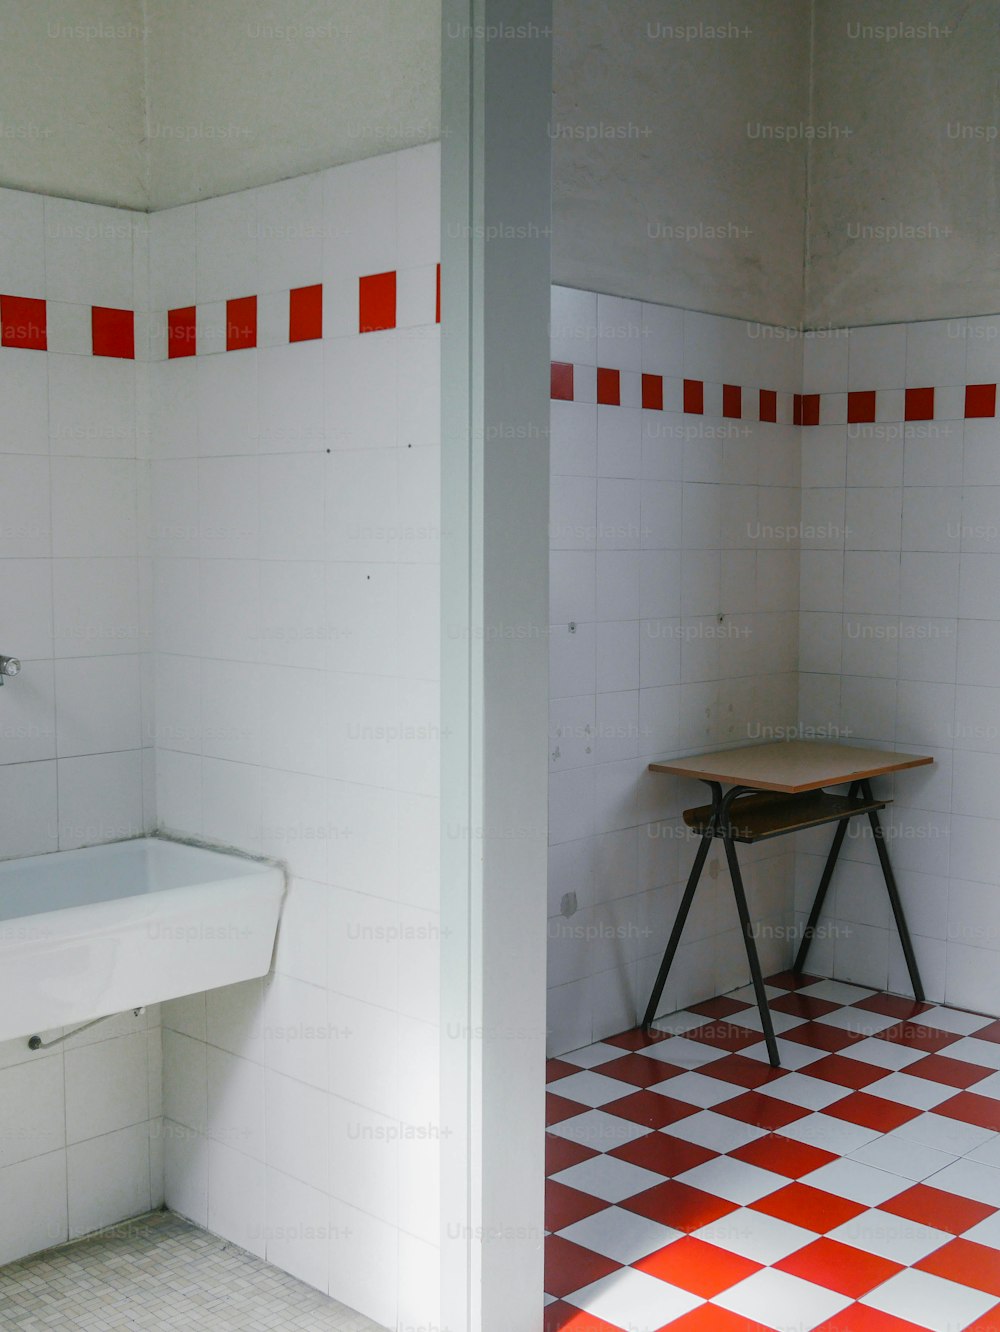 un baño con suelo a cuadros rojos y blancos